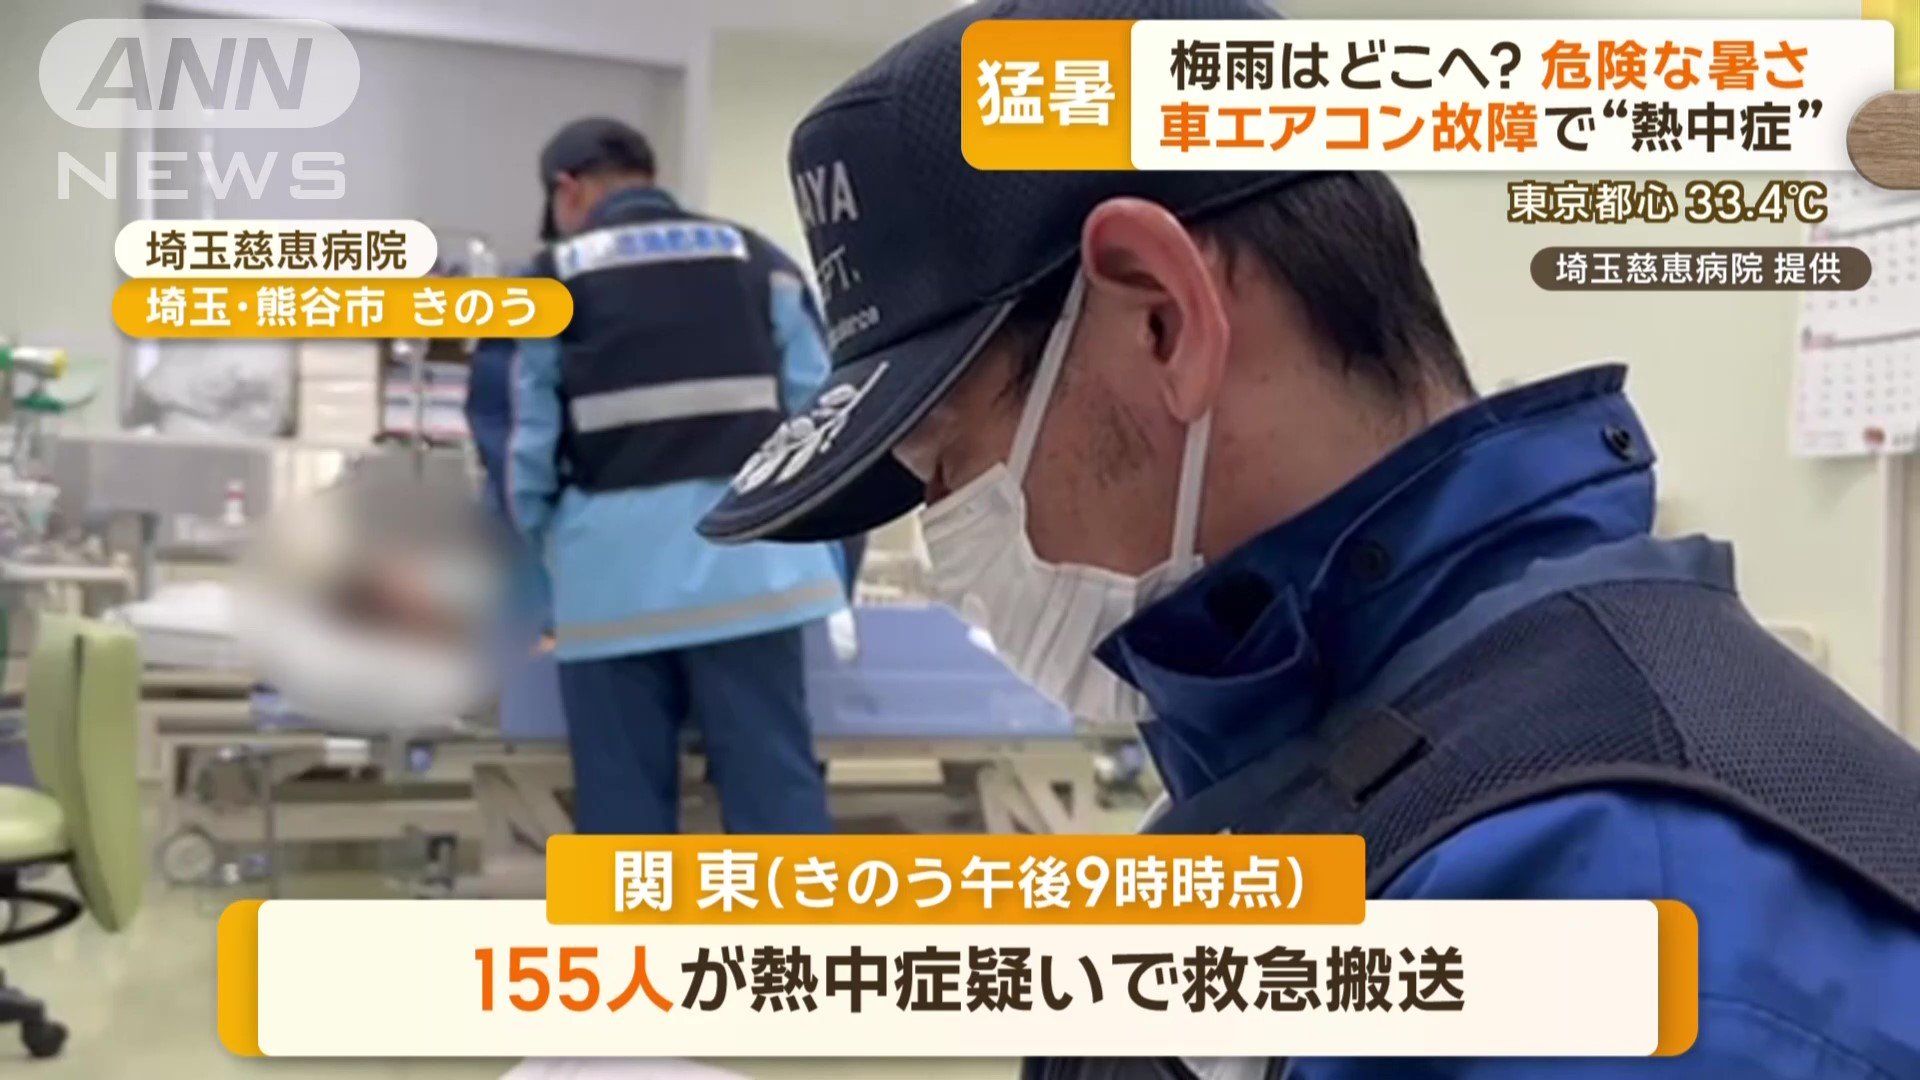 関東では合わせて155人が救急搬送